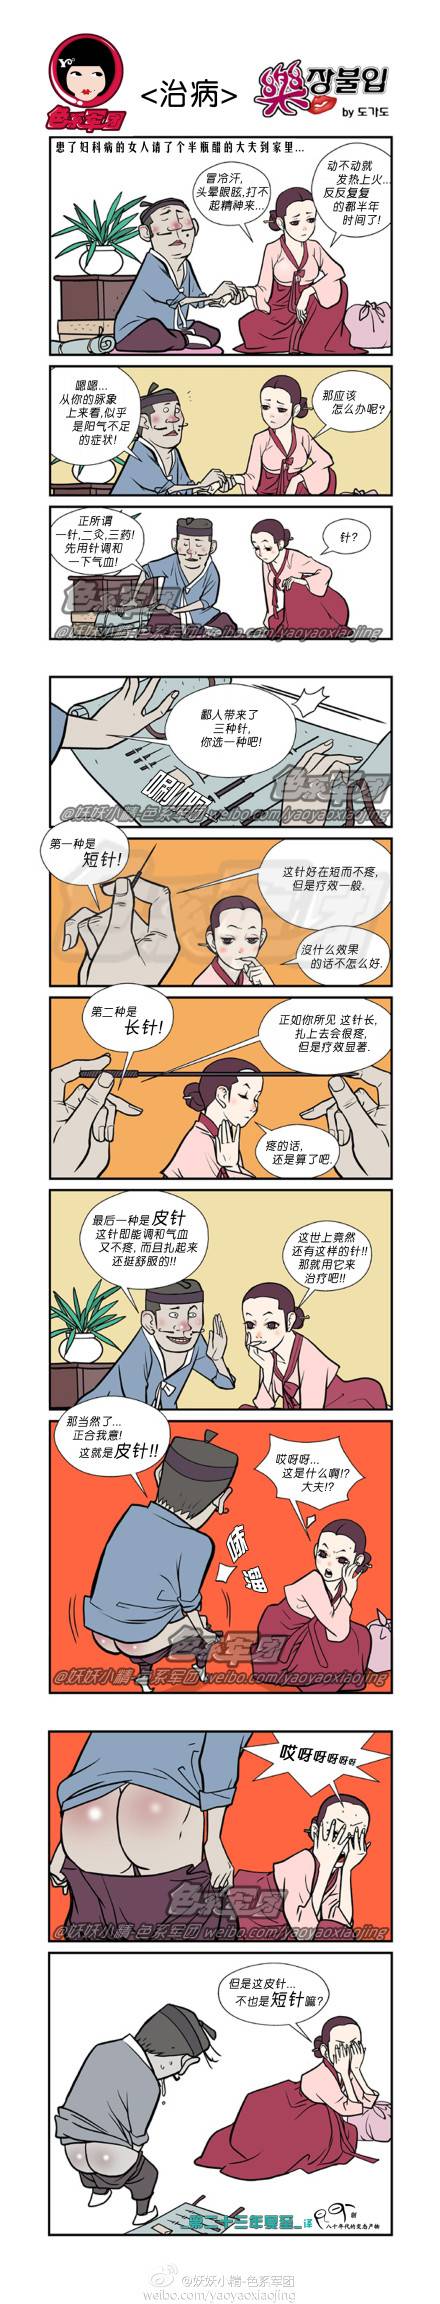 邪恶漫画爆笑囧图第28刊：美女服务